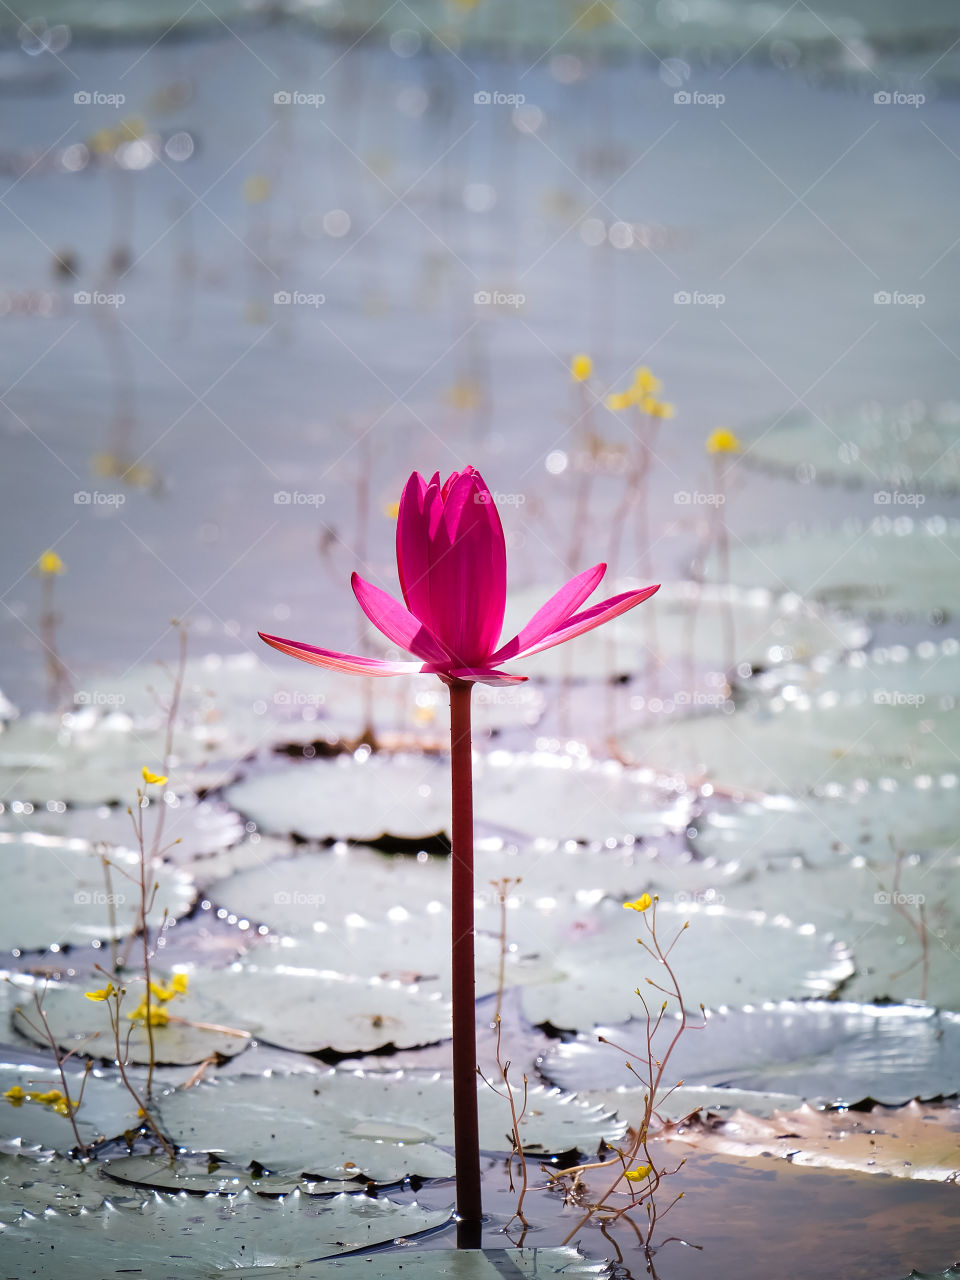 Lotus pink.